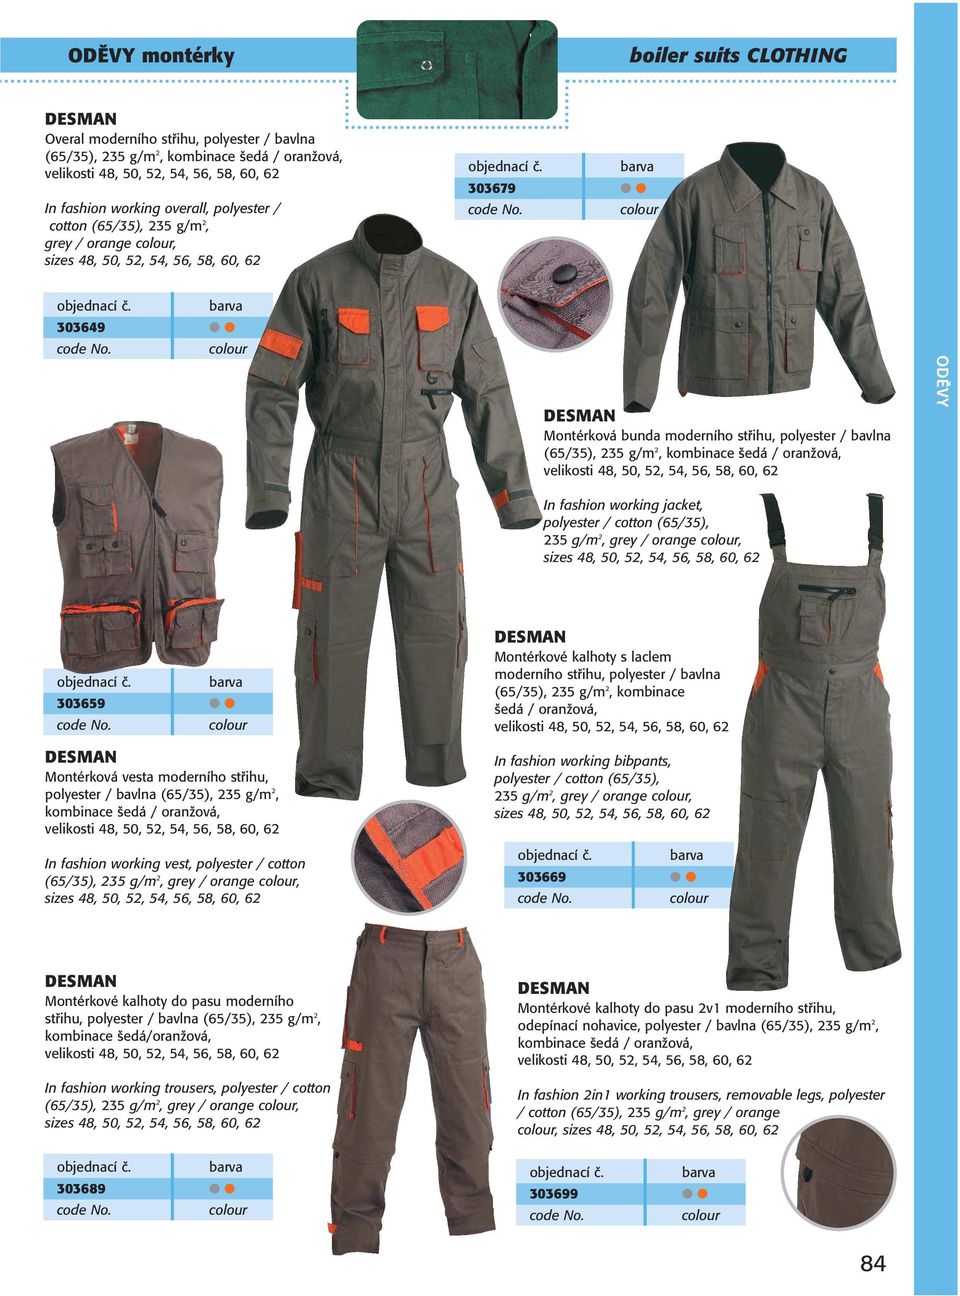 ODĚVY montérky. boiler suits CLOTHING - PDF Stažení zdarma